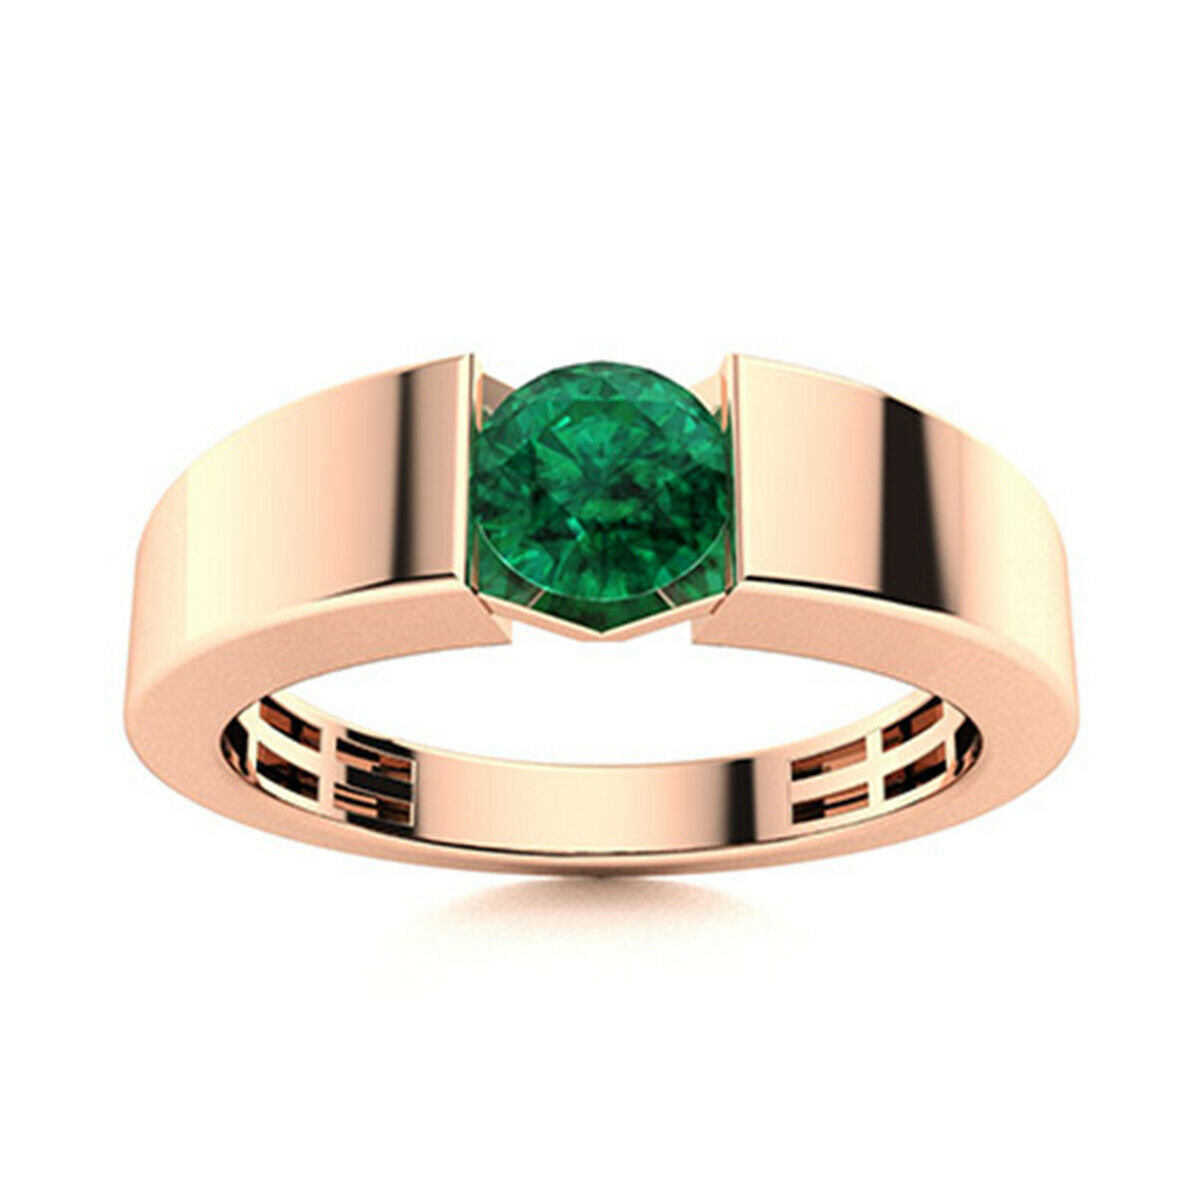 0.50 Ctw Round Green Sapphire 9K Rose Gold Handmade Ring Jewelry Gift